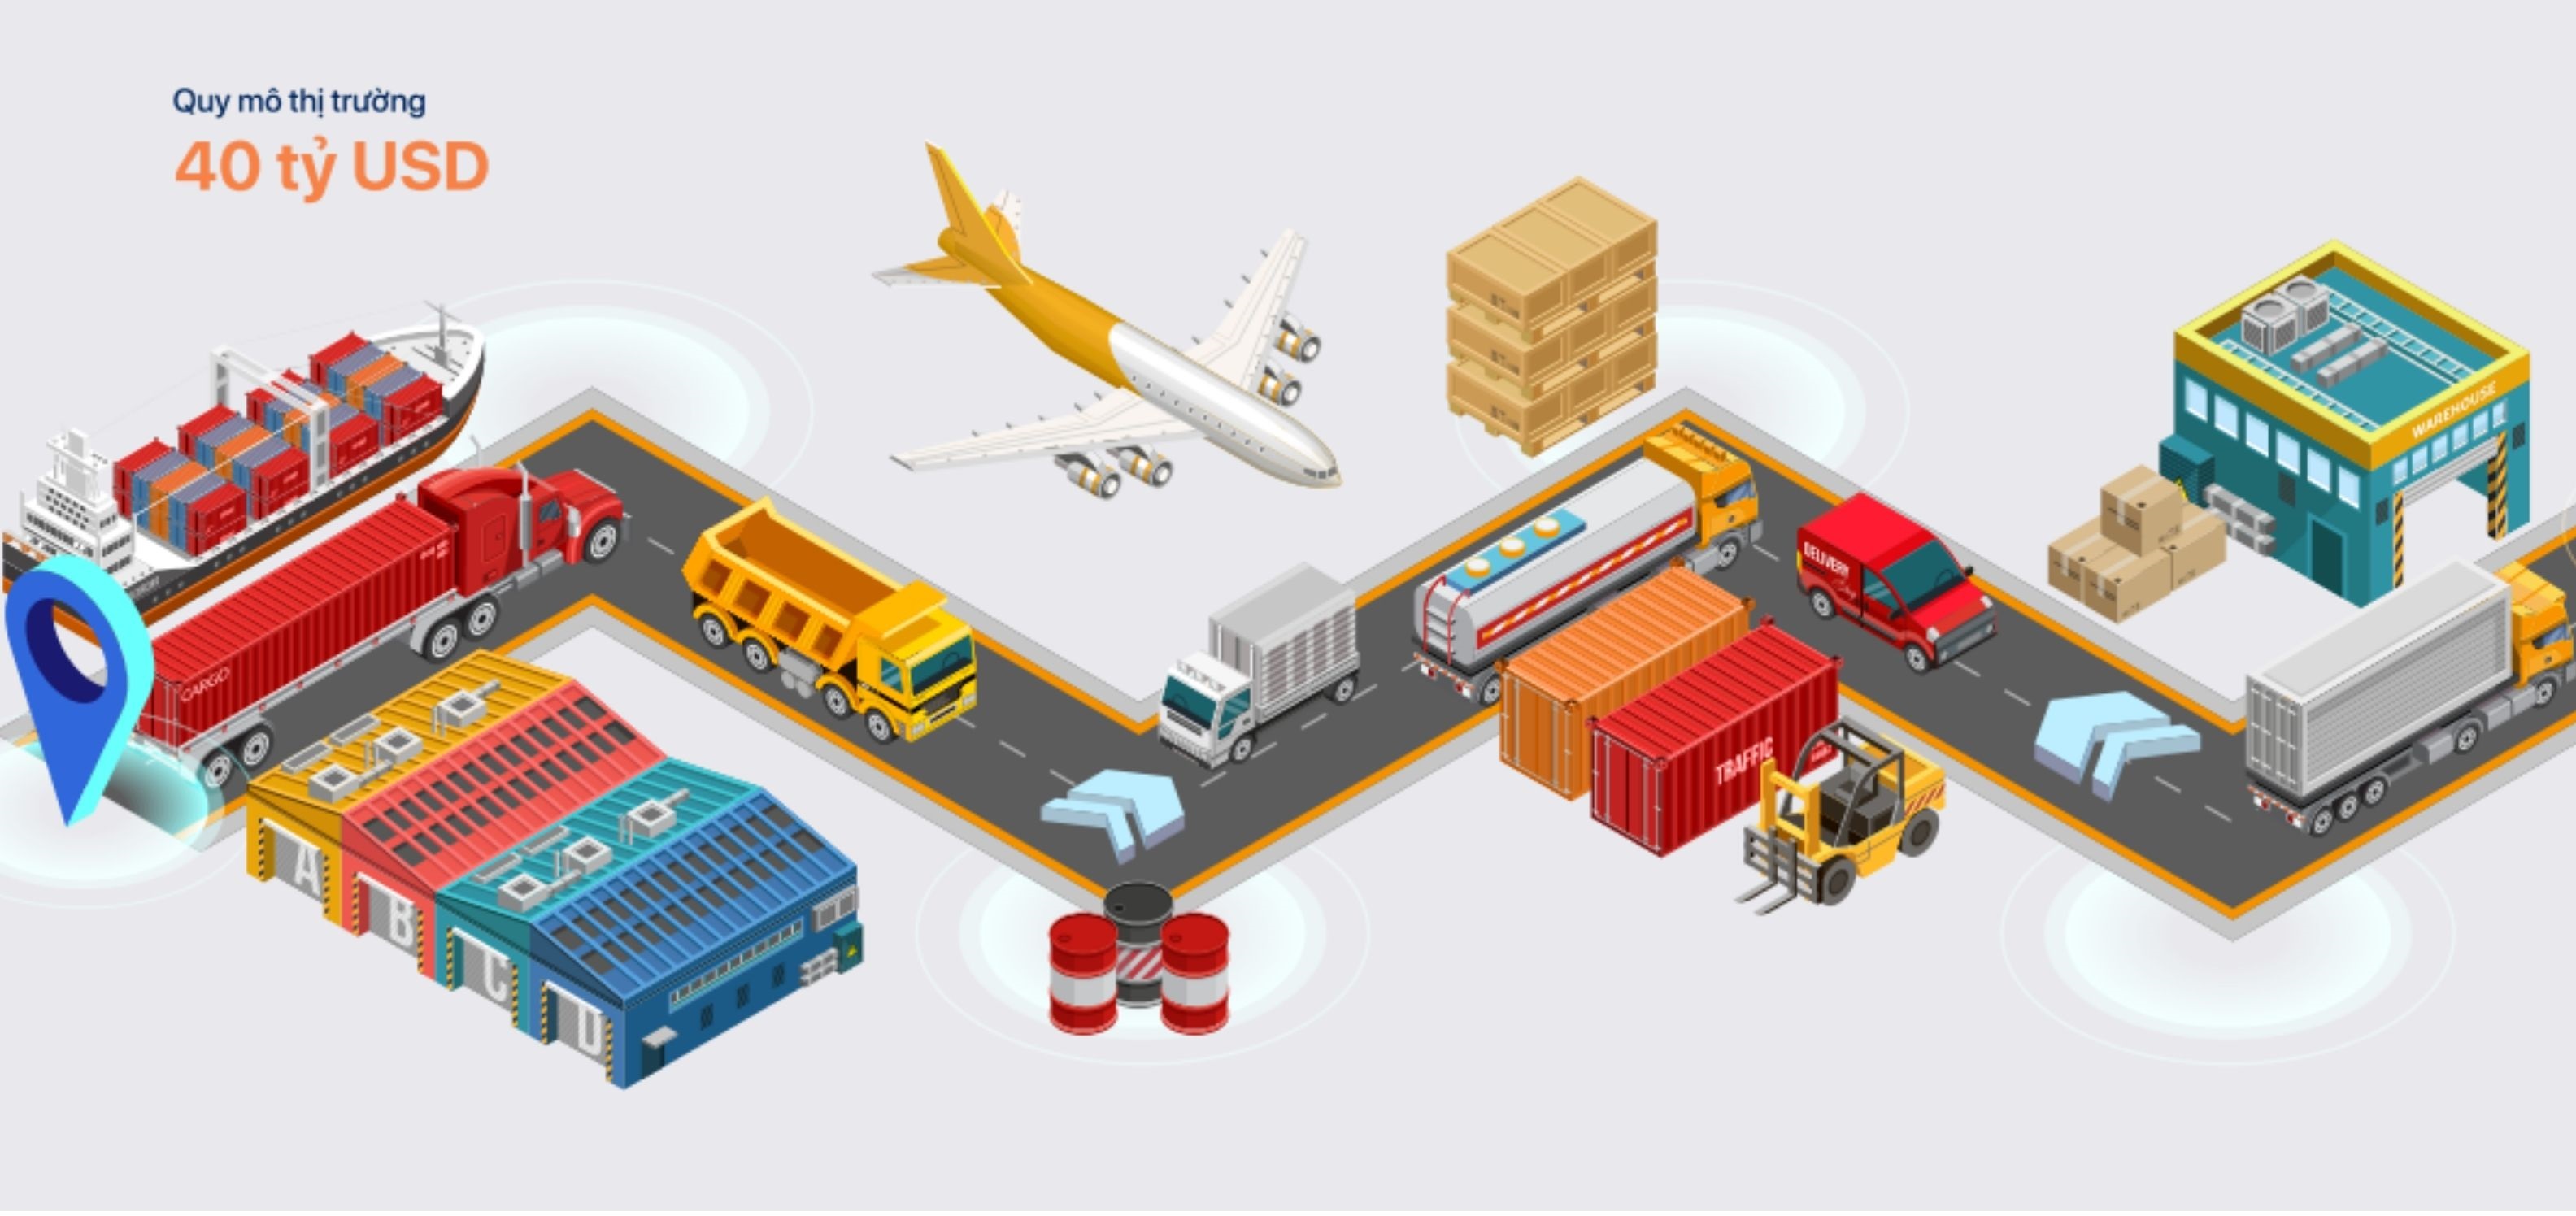 Cẩm nang Chuyển đổi số Ngành Logistics cho doanh nghiệp vừa và nhỏ 1